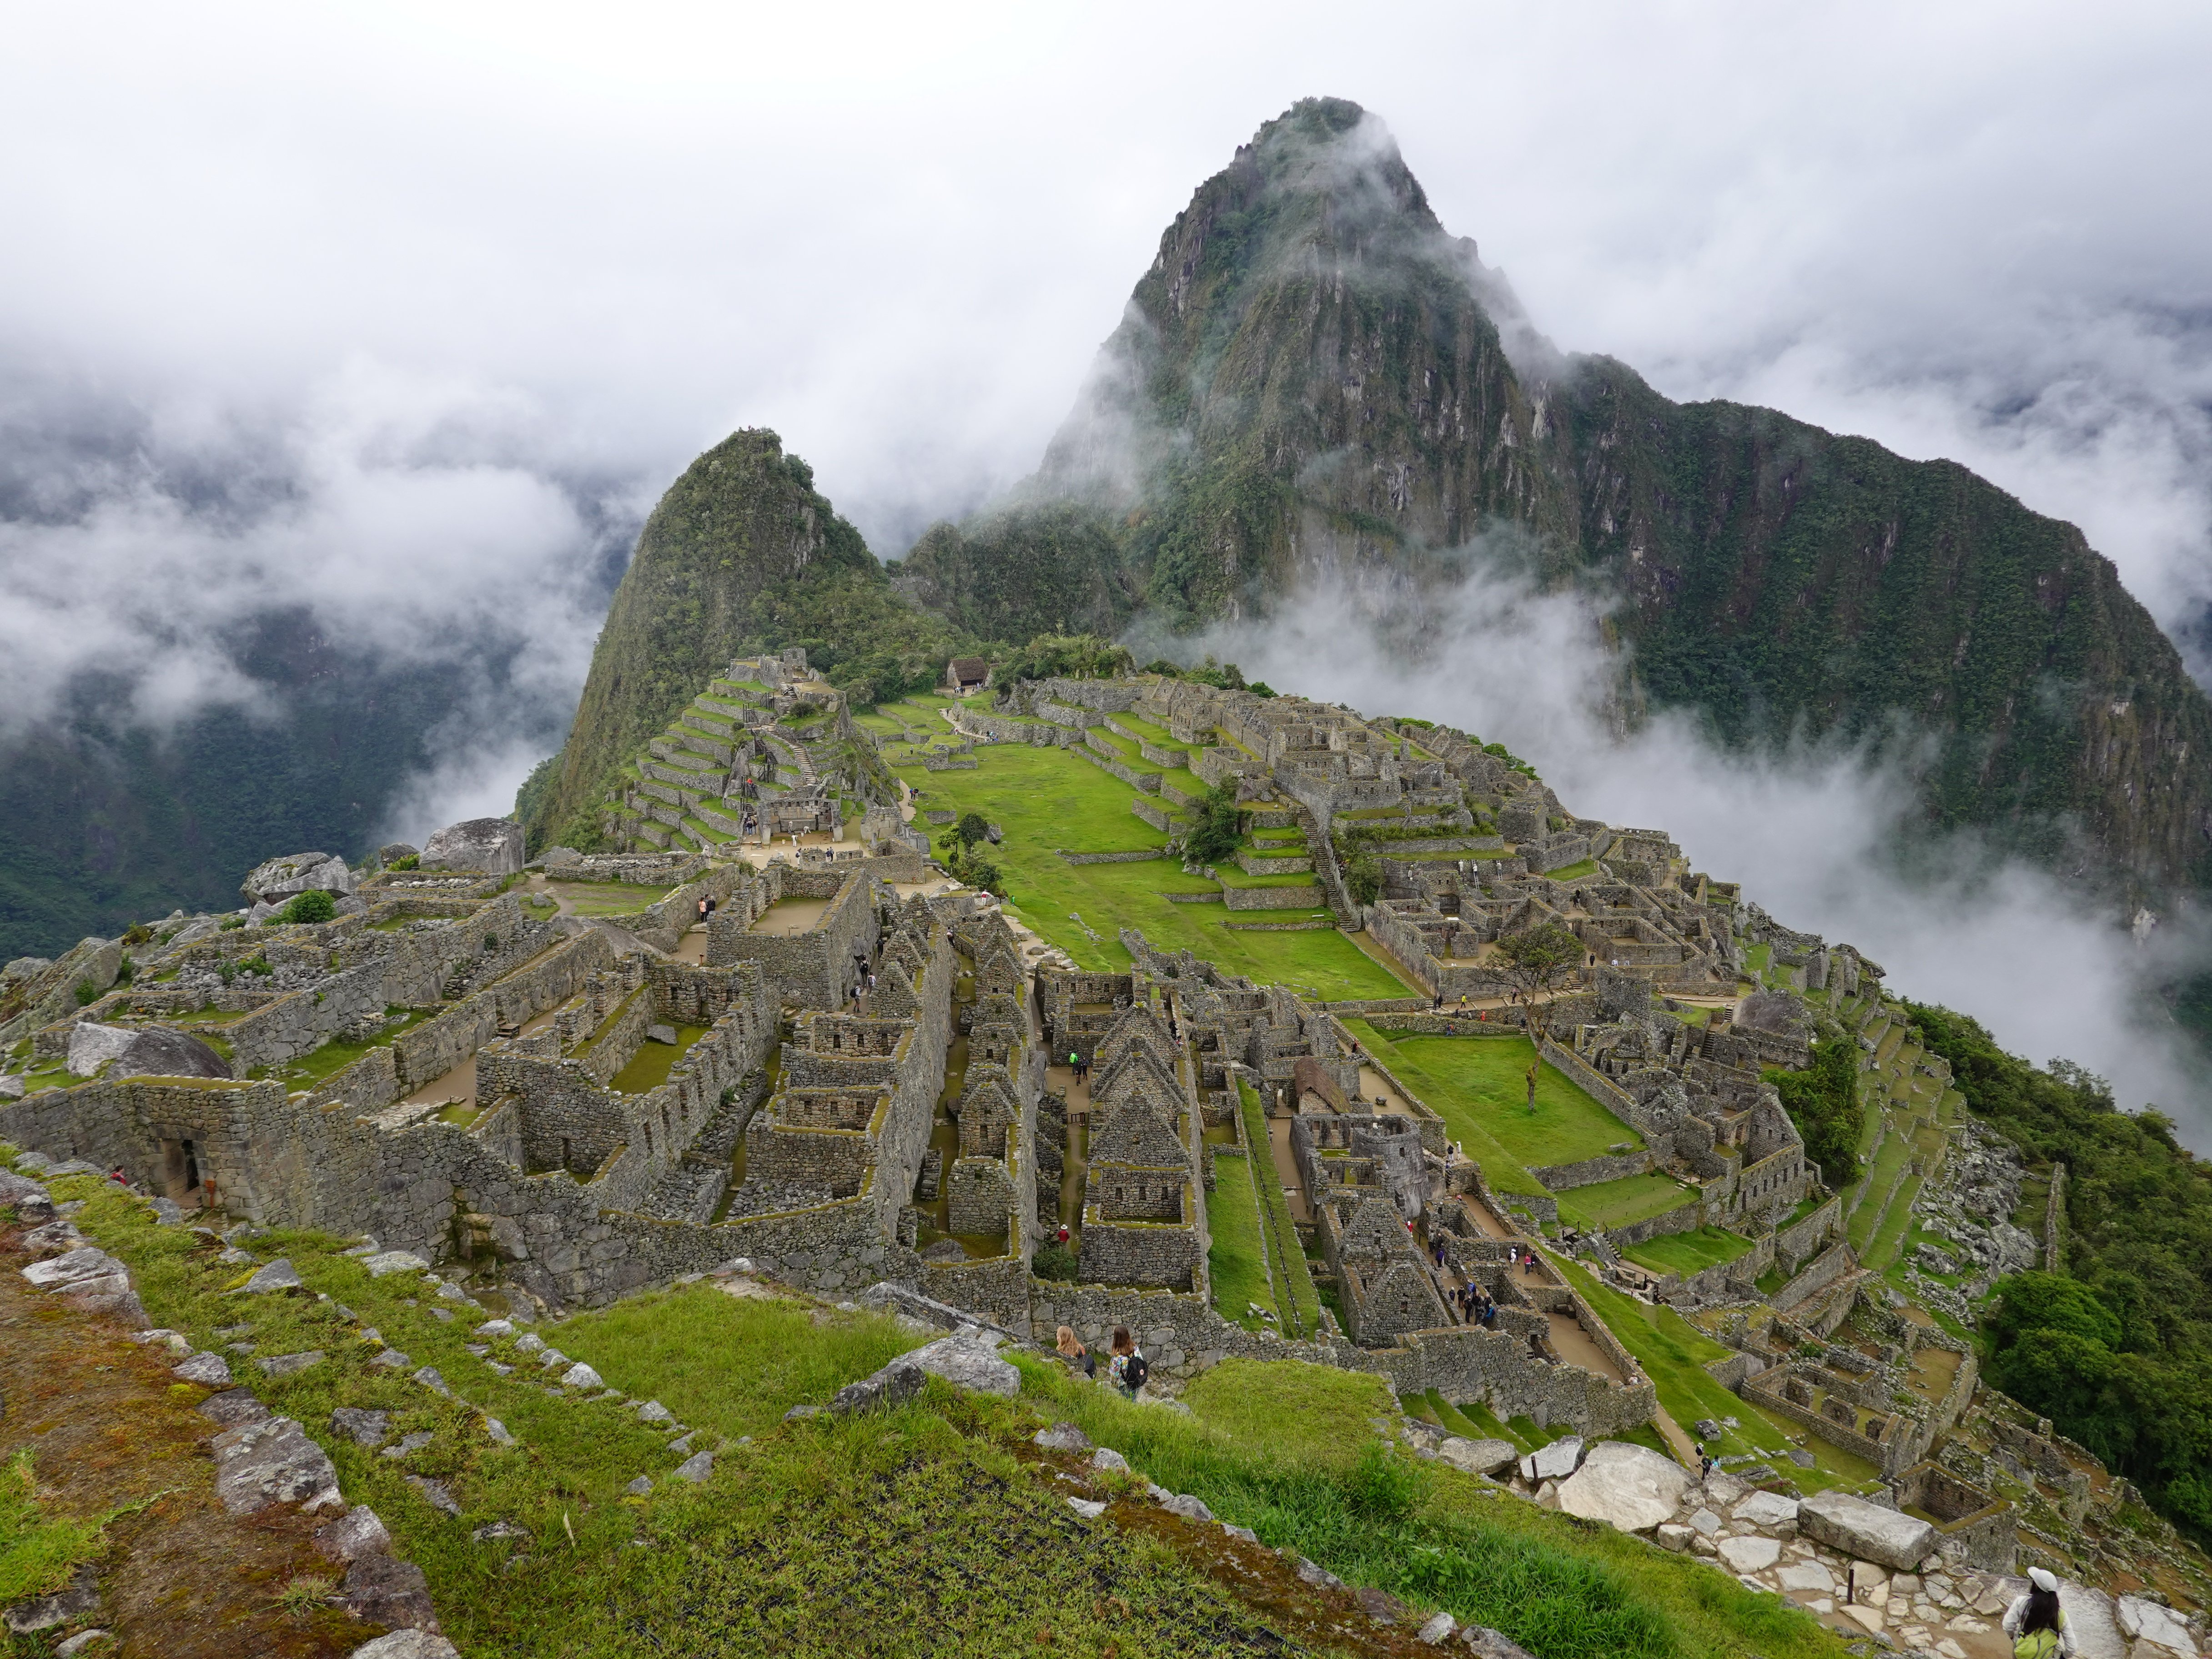 The grand finale - Machu Picchu